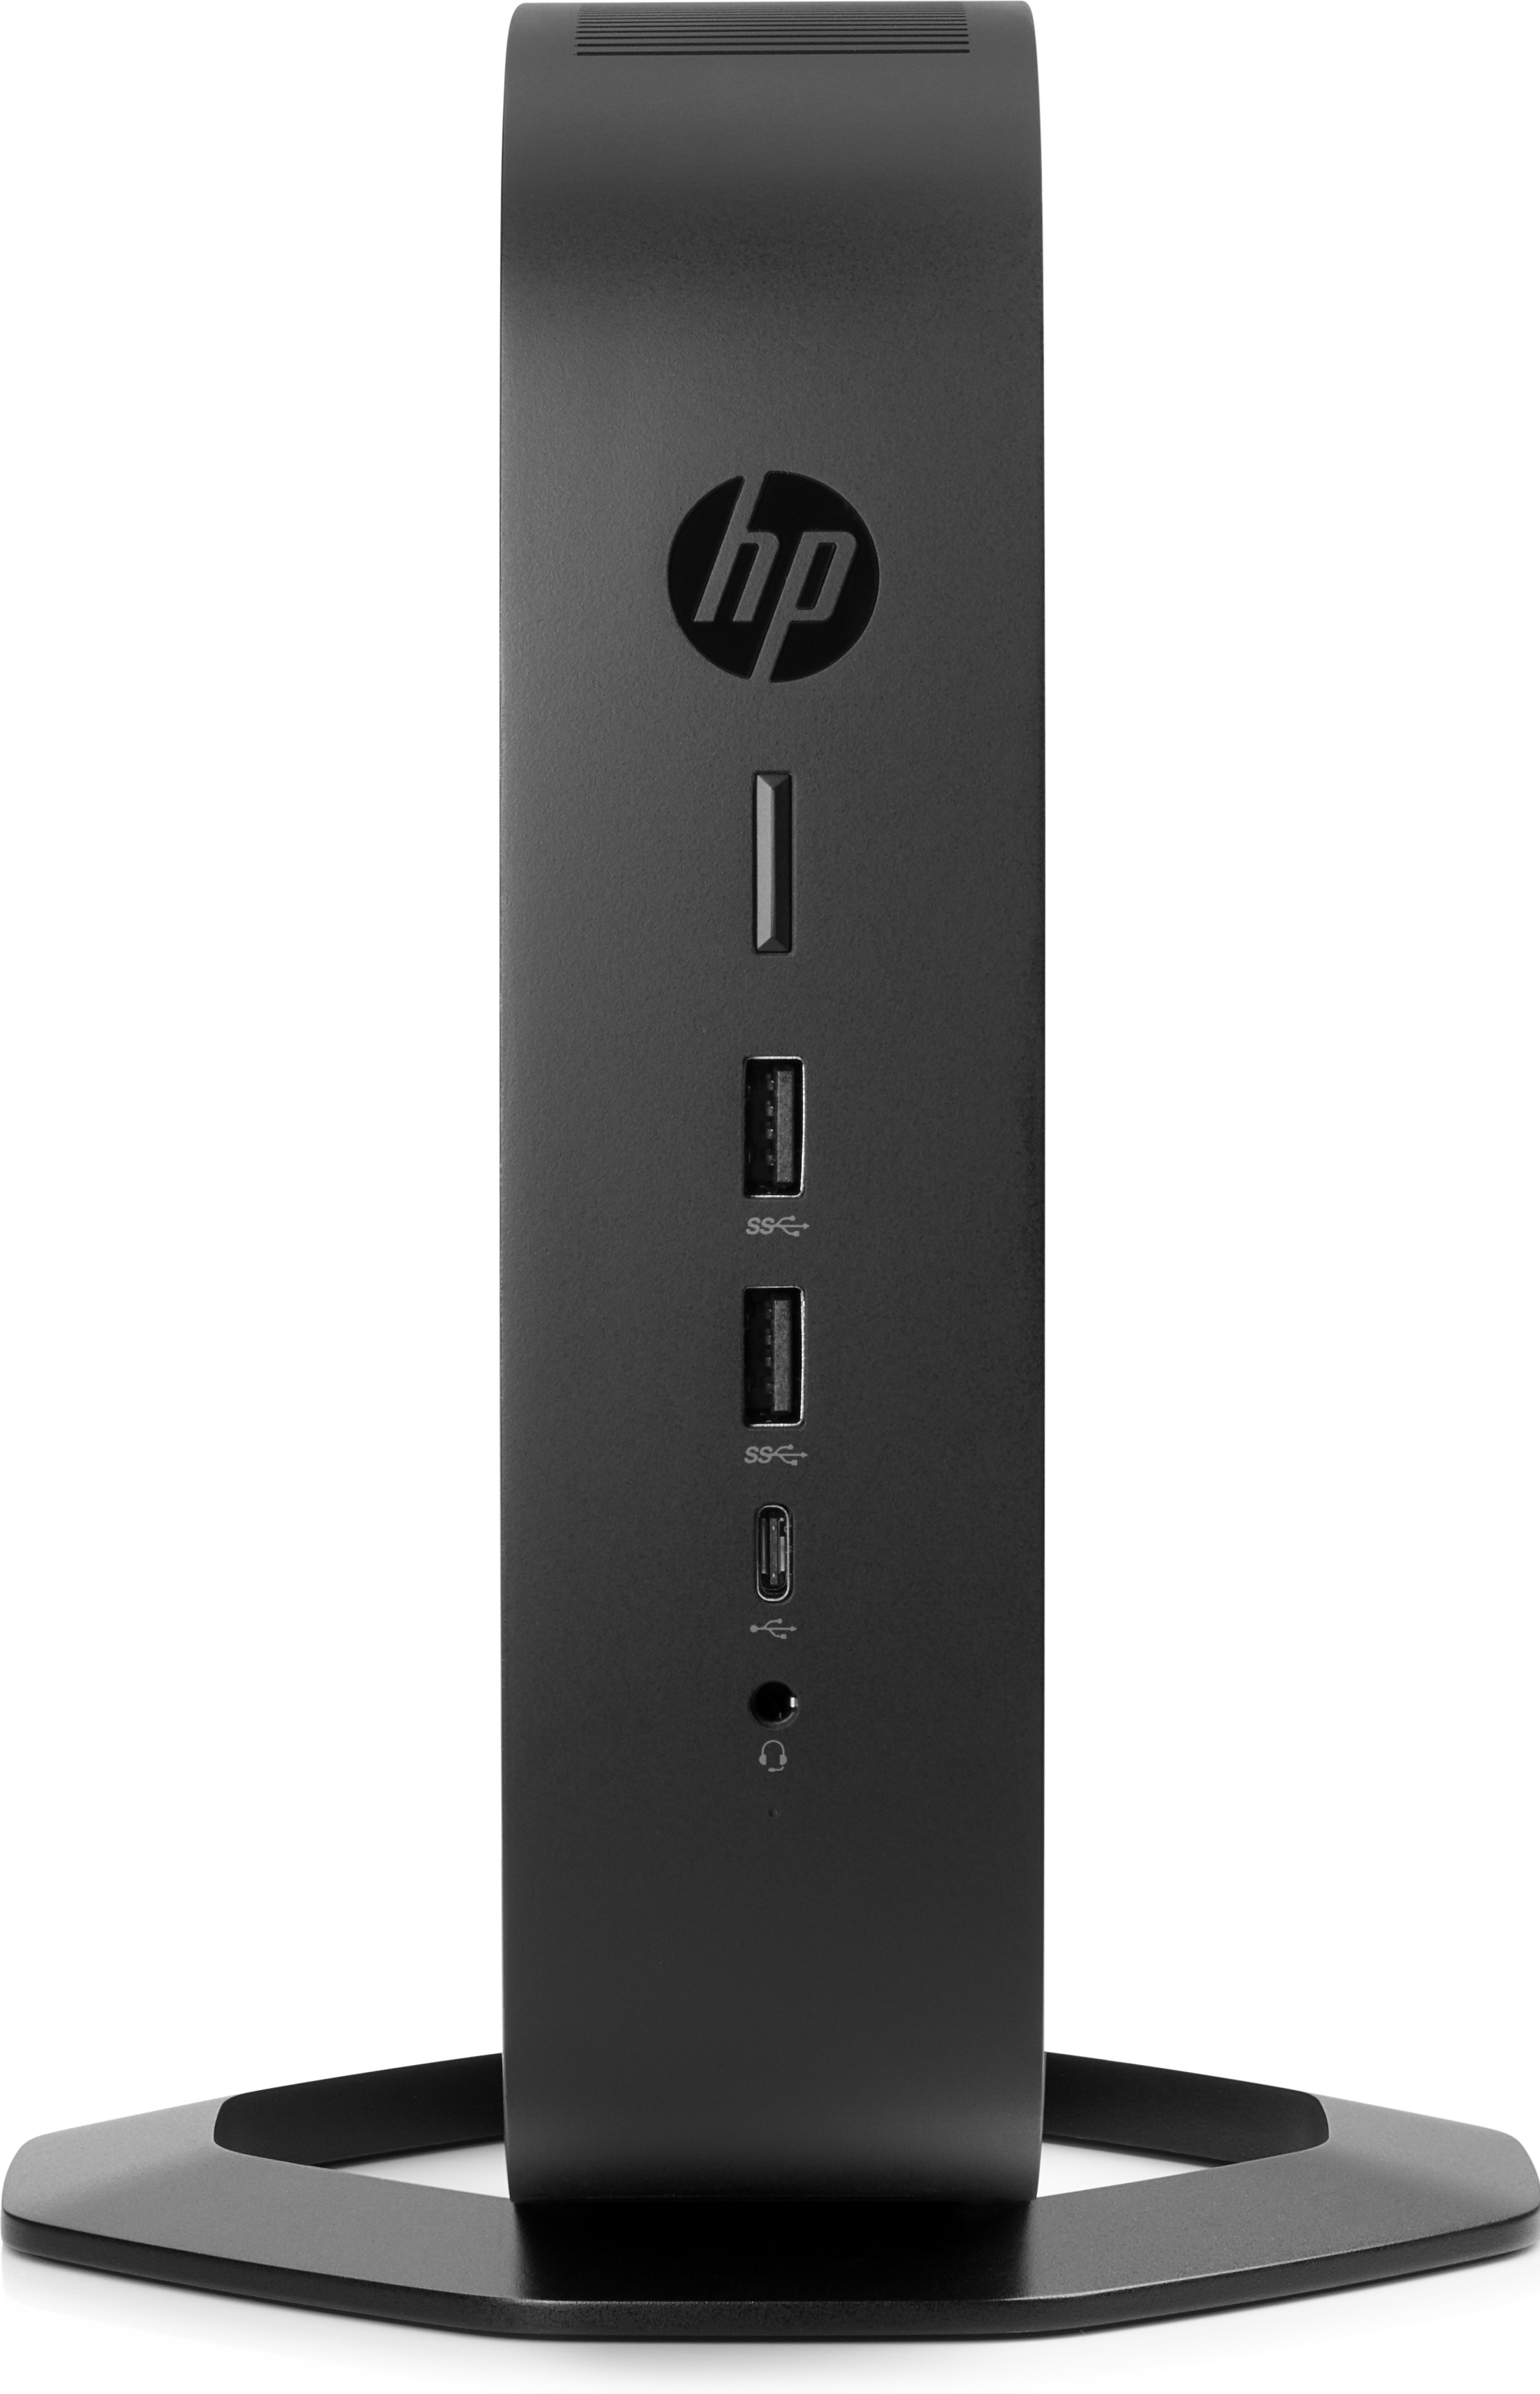 HP t740 - Thin client